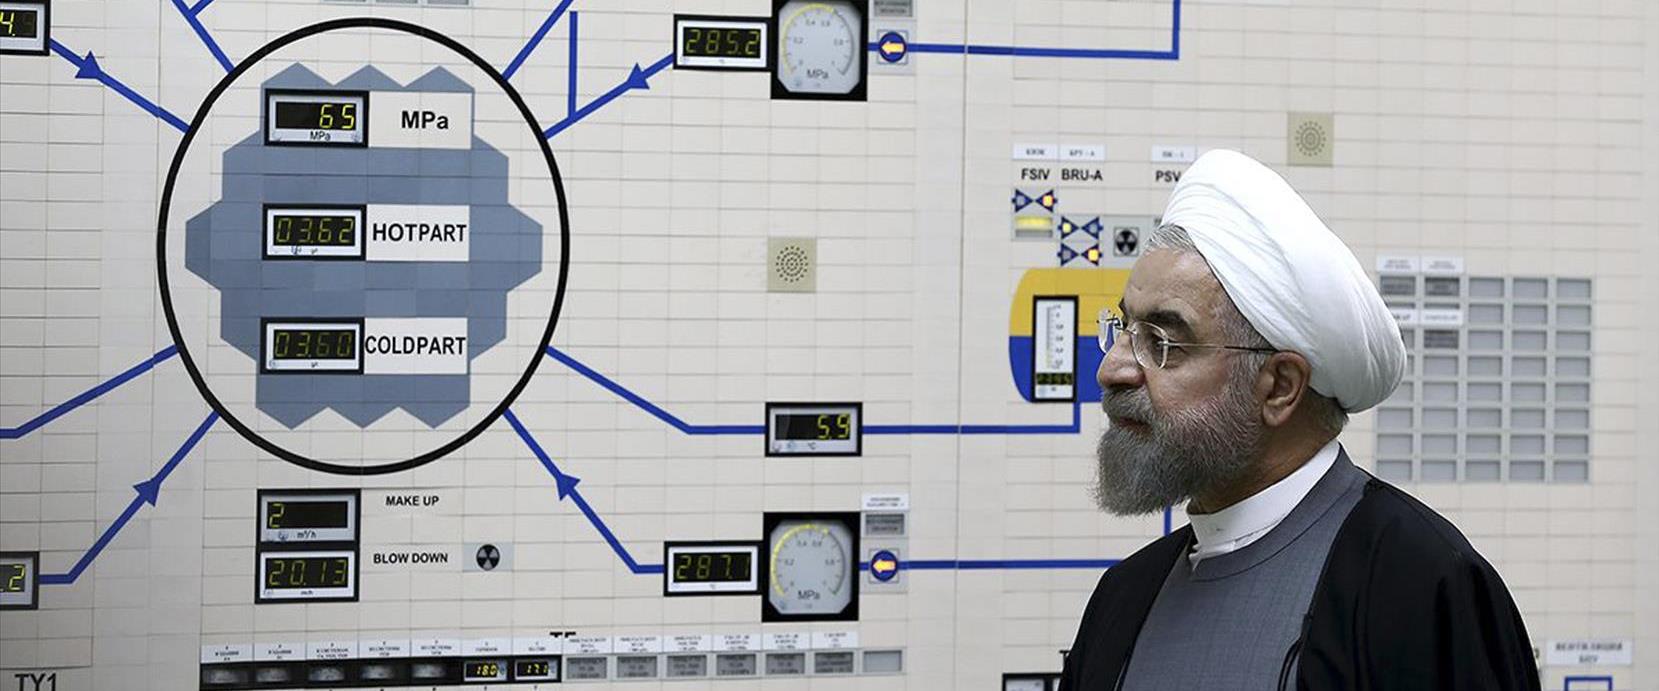 נשיא איראן חסן רוחאני במתקן הגרעיני בבושהר